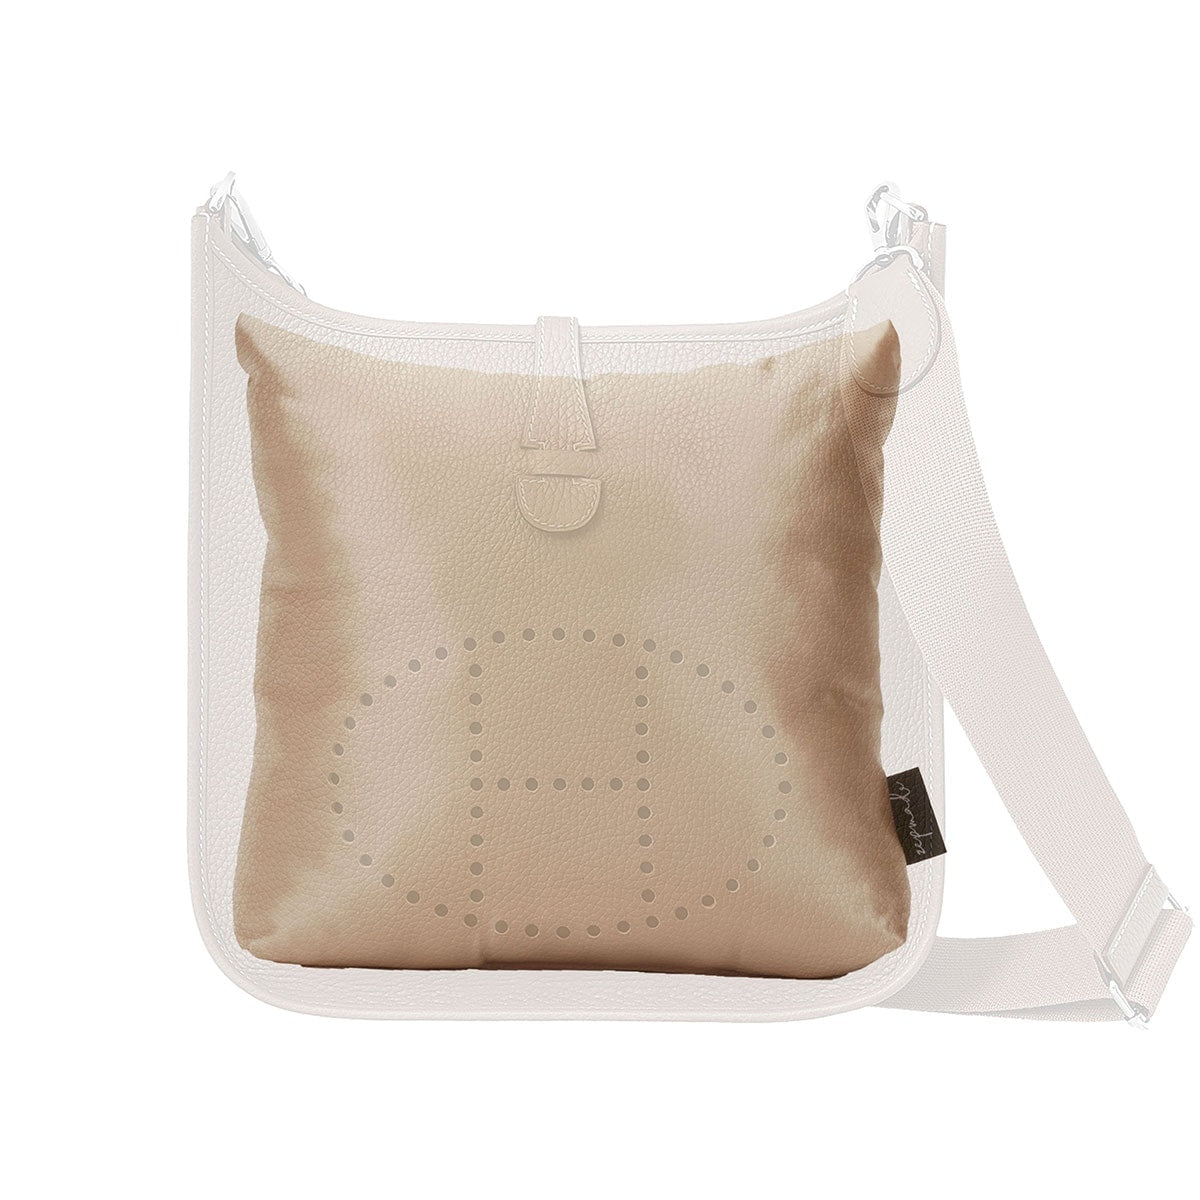 Purse Pillow for Louis Vuitton Neverfull Bag Models, Bag Shaper Pillow -  Zepmade